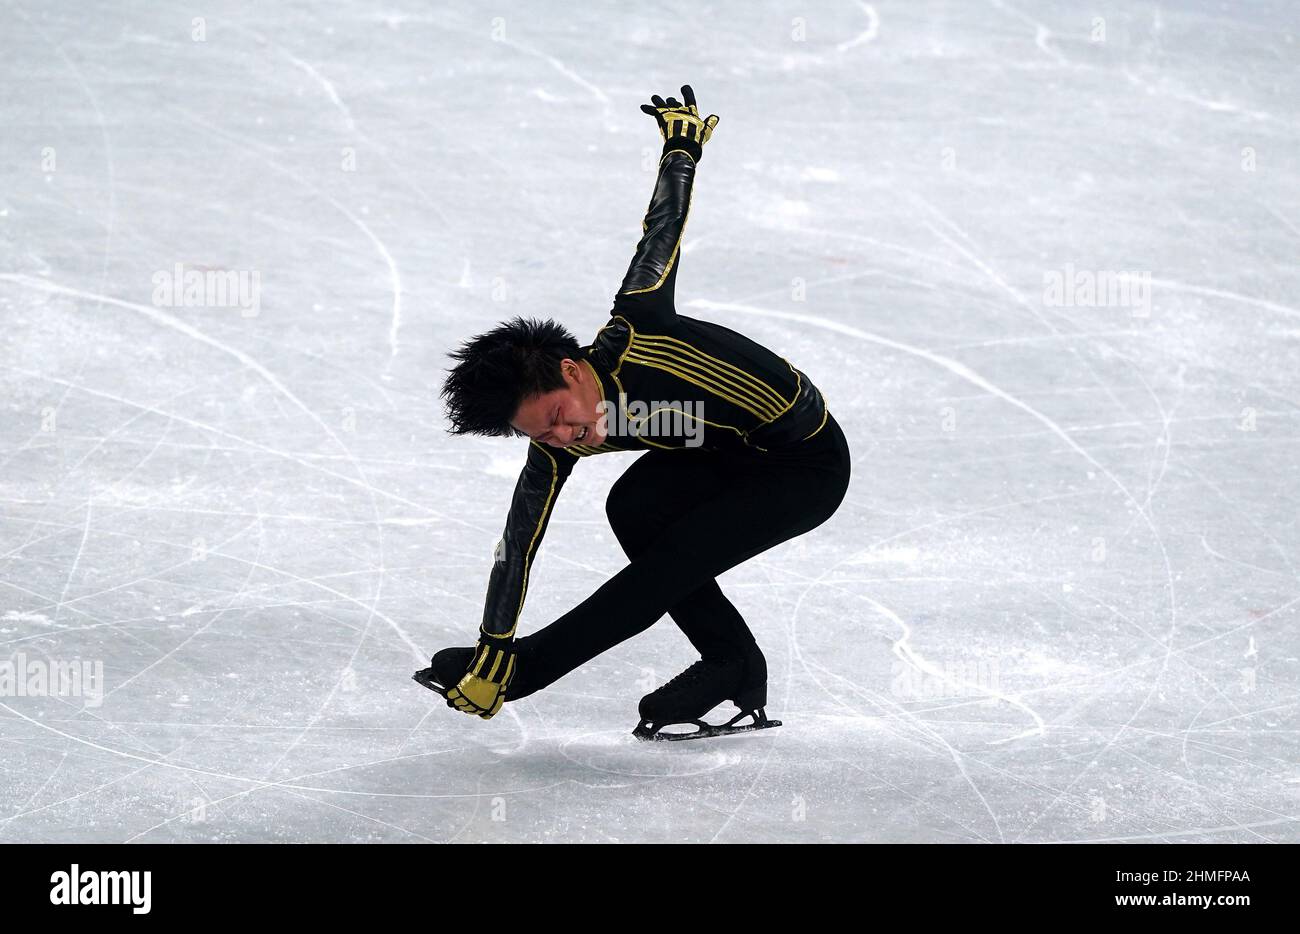 Adam Siao HIM Fa en France pendant le patinage individuel masculin - Patinage gratuit le sixième jour des Jeux Olympiques d'hiver de Beijing 2022 au stade intérieur de la capitale en Chine. Date de la photo : jeudi 10 février 2022. Banque D'Images